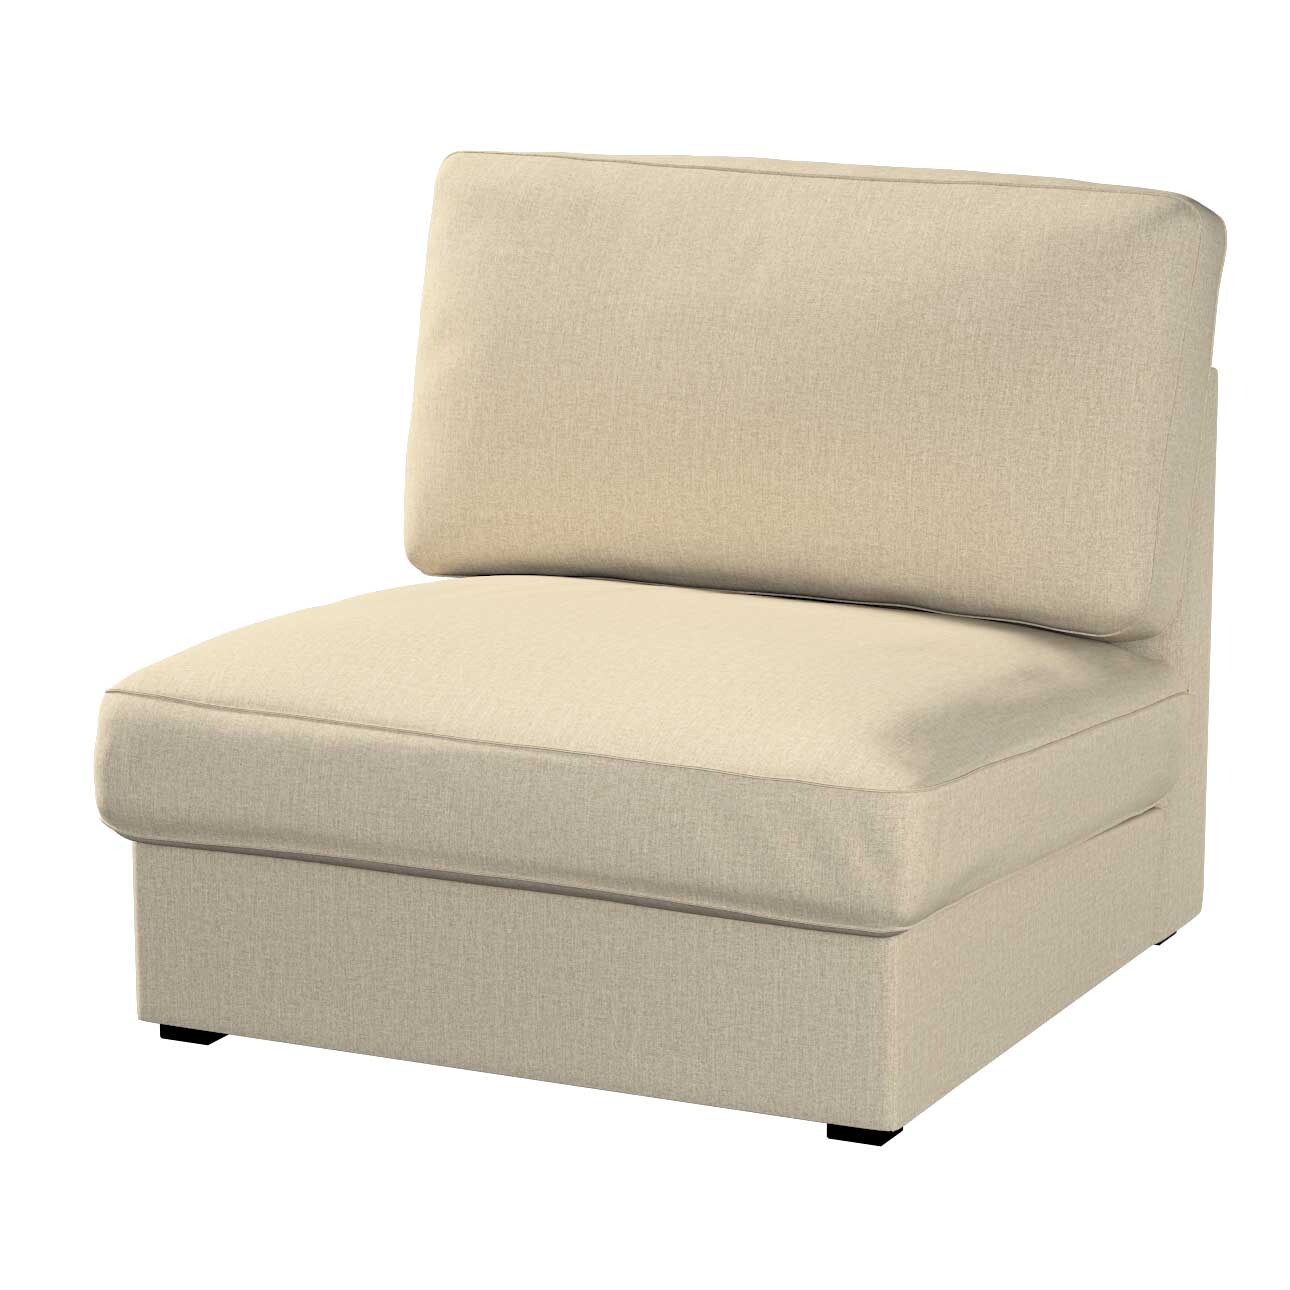 Bezug für Kivik Sessel nicht ausklappbar, beige- grau, Bezug für Sessel Kiv günstig online kaufen